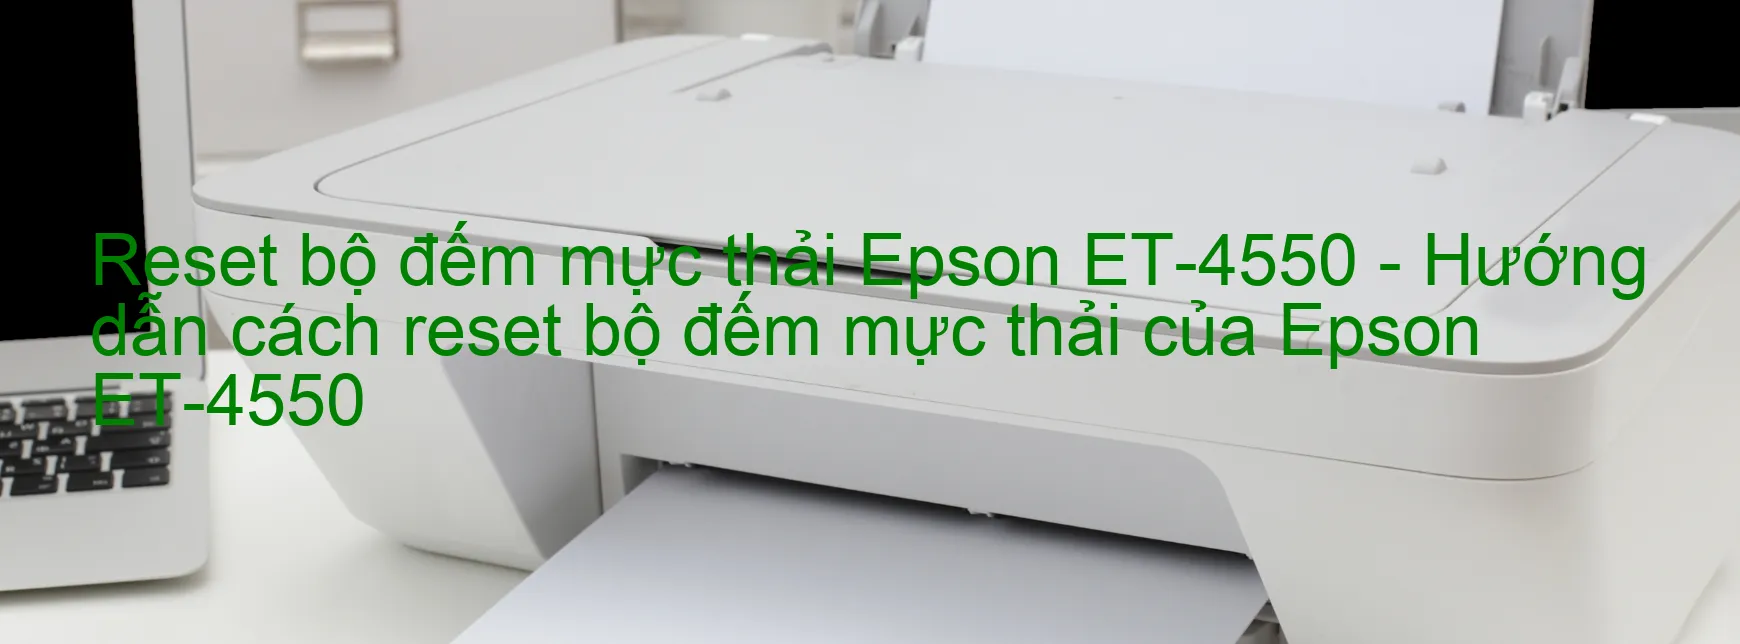 Reset bộ đếm mực thải Epson ET-4550 - Hướng dẫn cách reset bộ đếm mực thải của Epson ET-4550